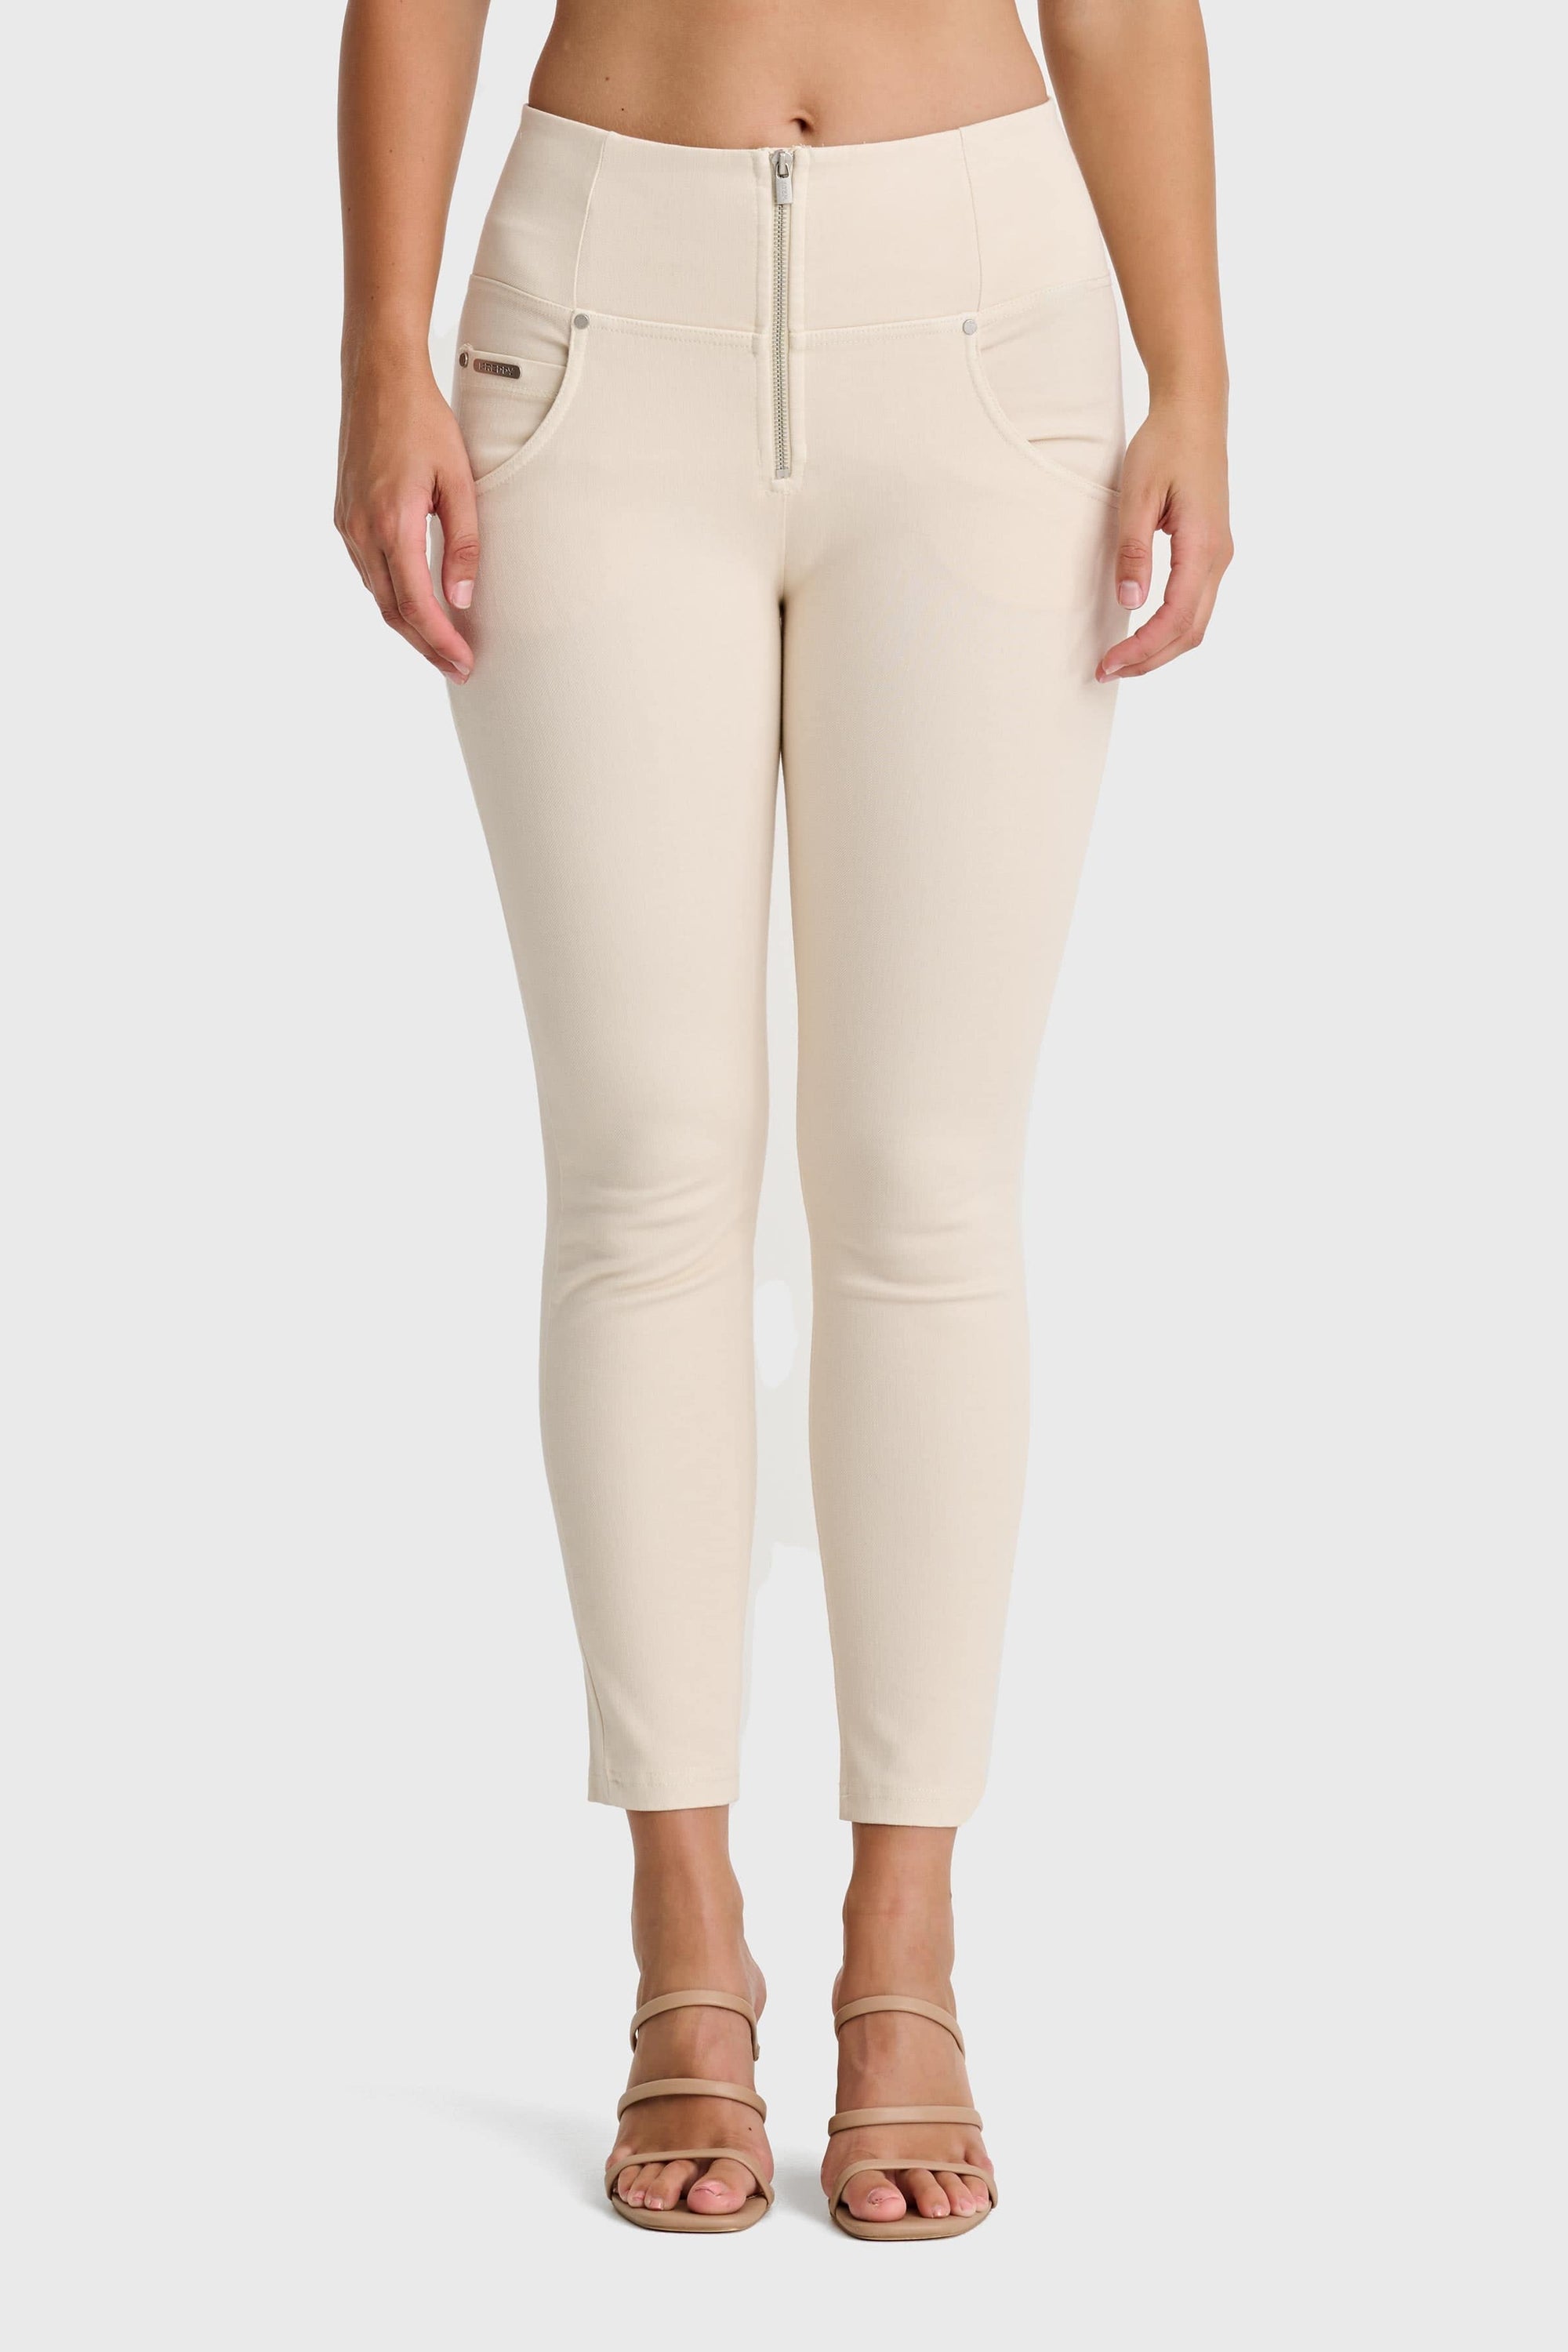 WR.UP® Snug Jeans - High Waisted - 7/8 Length - Ivory 8